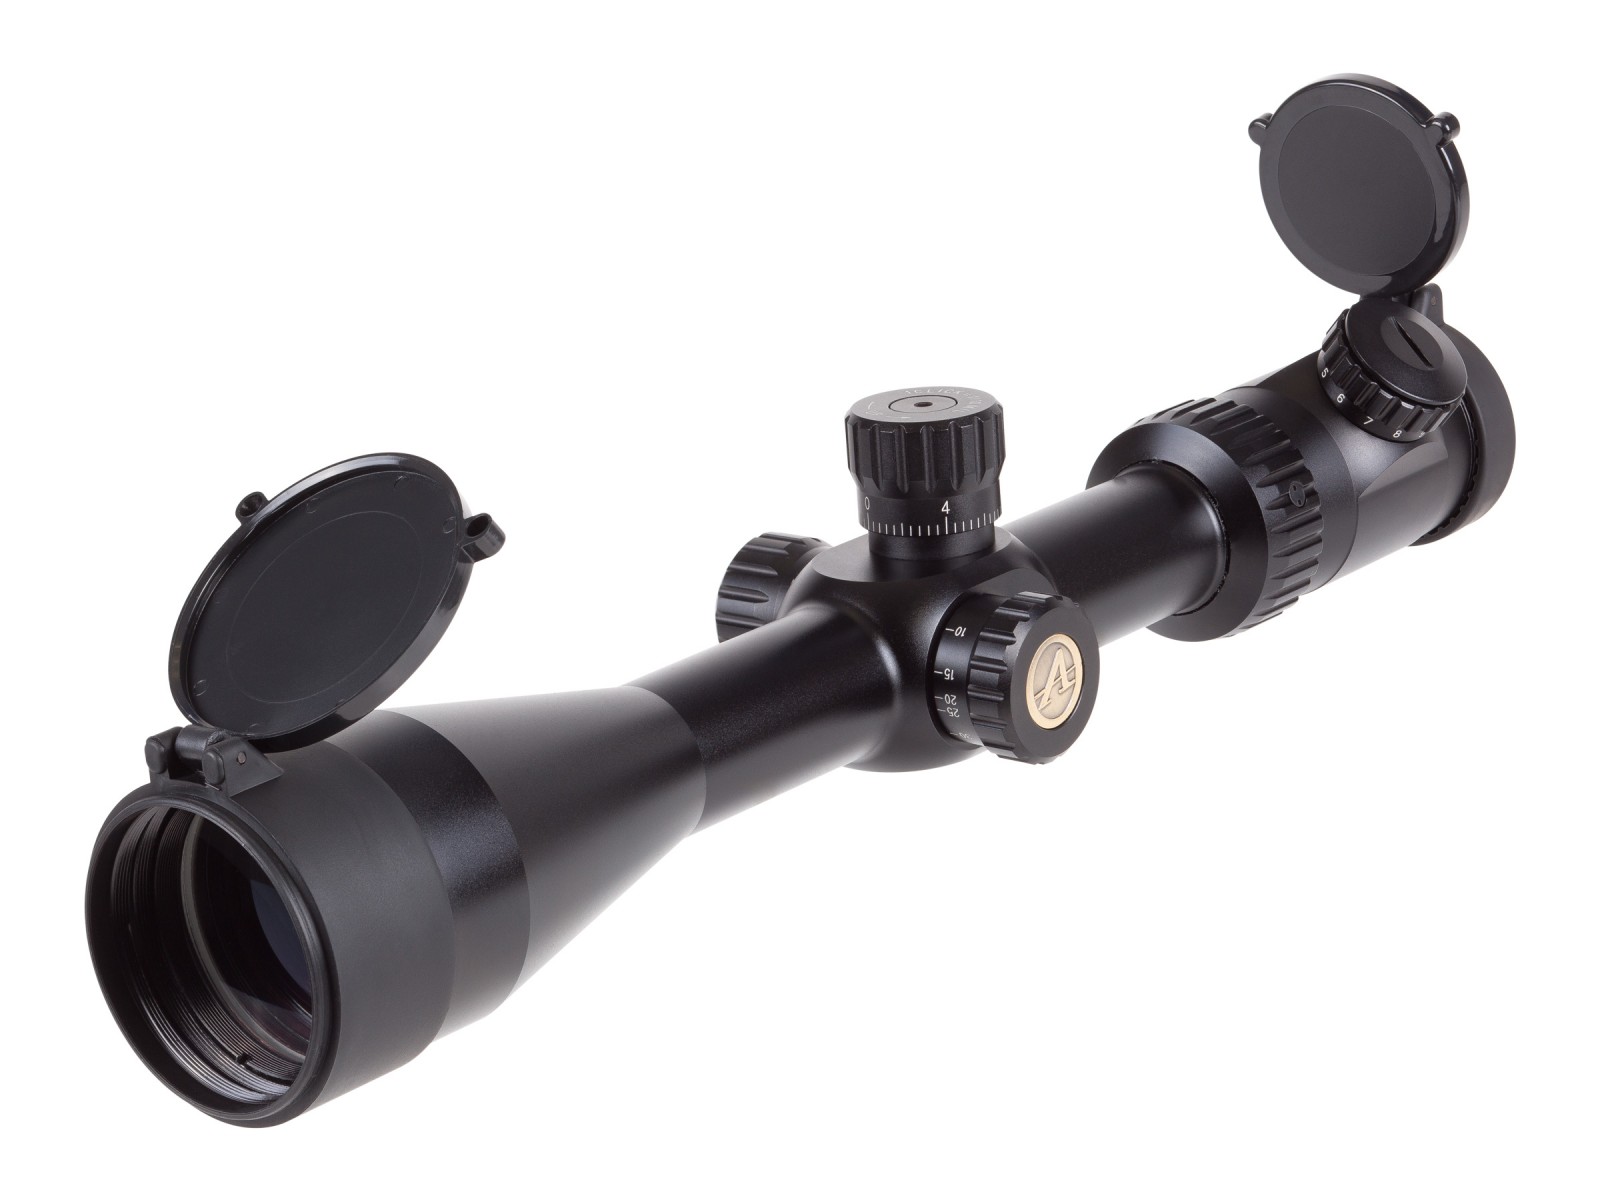 Athlon Optics 6-24x50 Argos BTR Tactical Rifle Scope, FFP Ill. APMR Reticle, 0.1 MIL, 30mm Tube